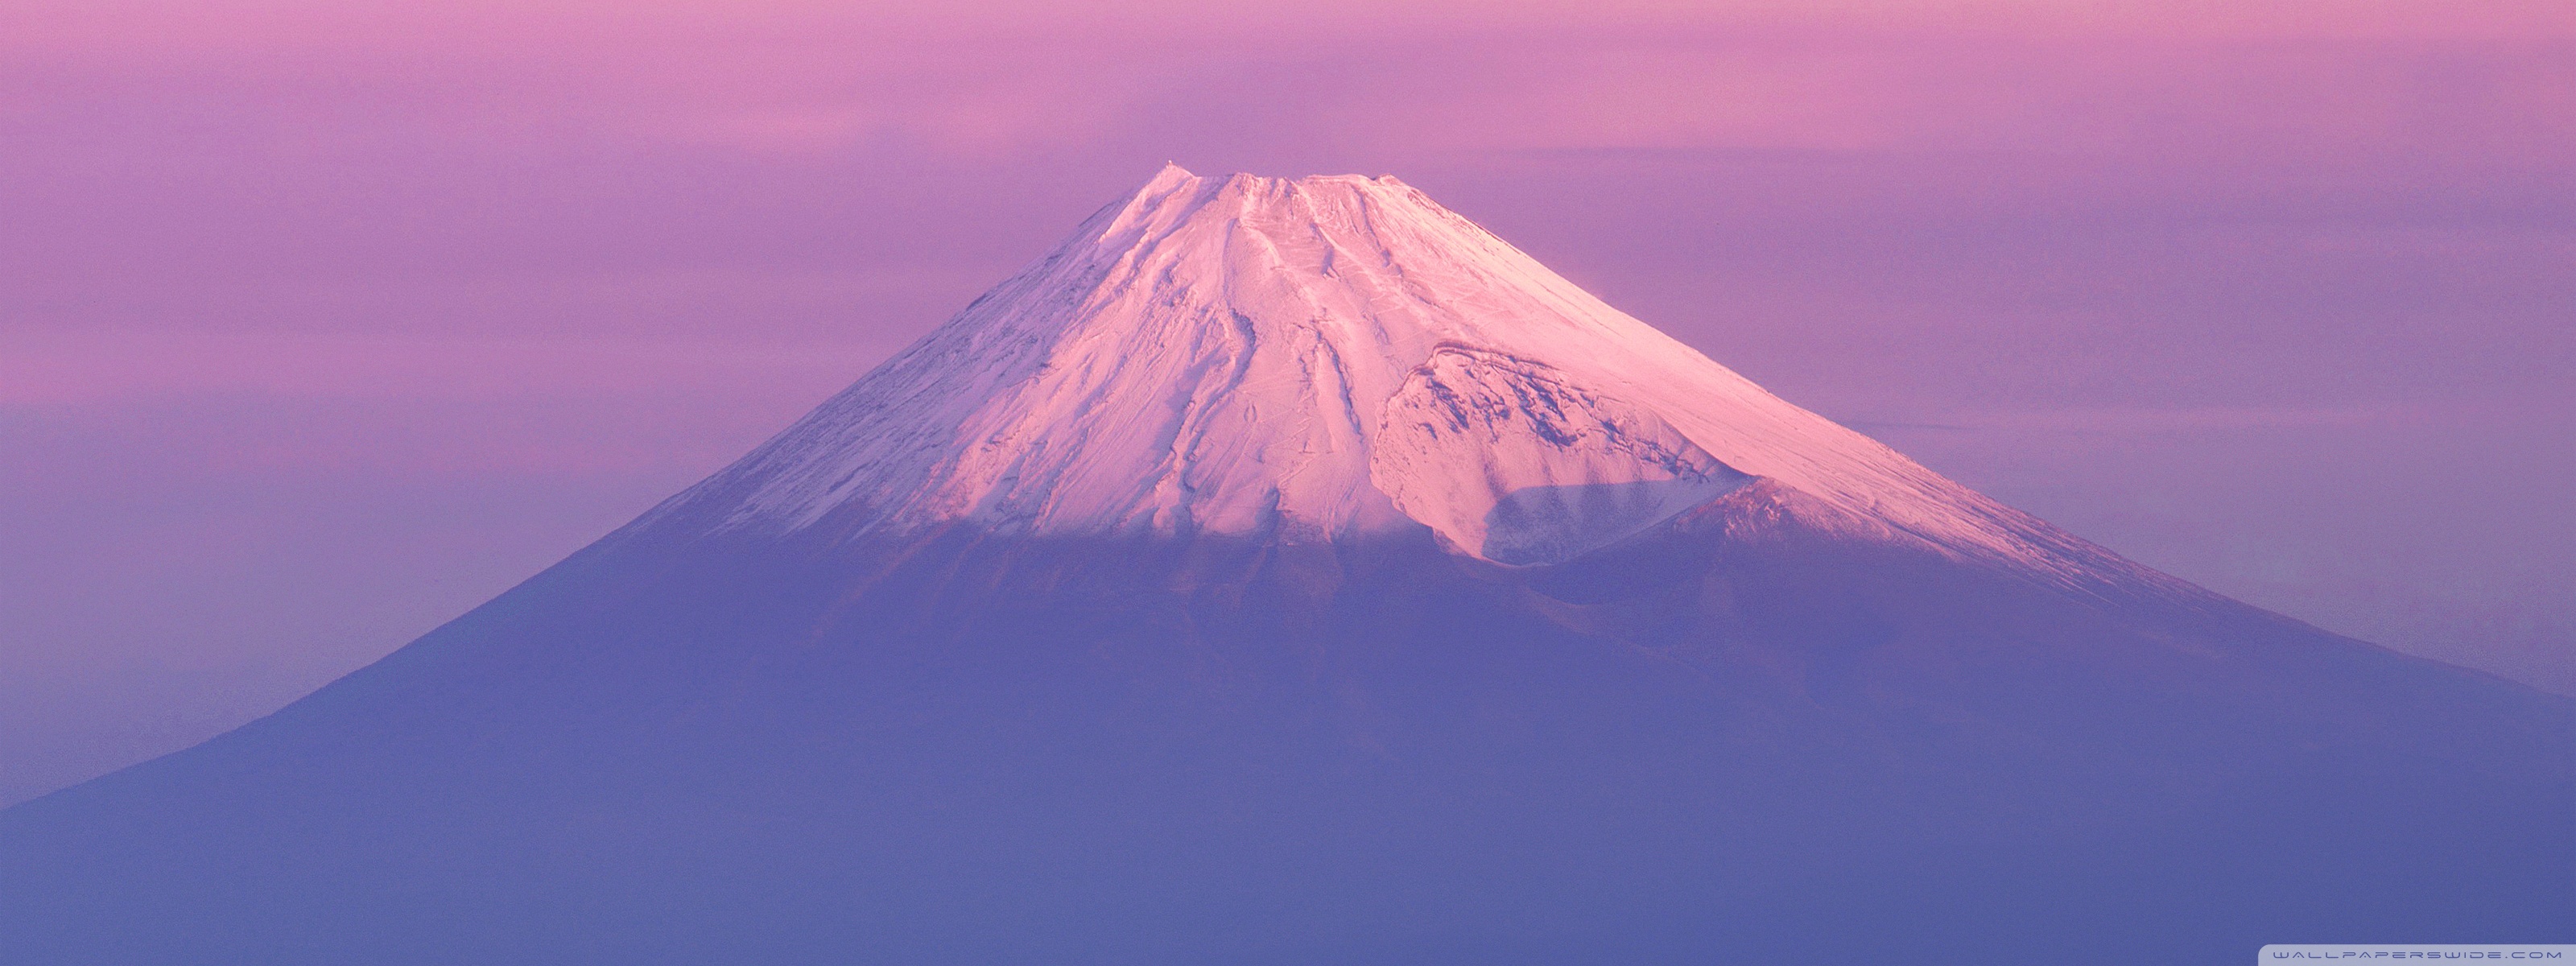 Mount. Fuji ❤ 4K HD Desktop Wallpaper for 4K Ultra HD TV